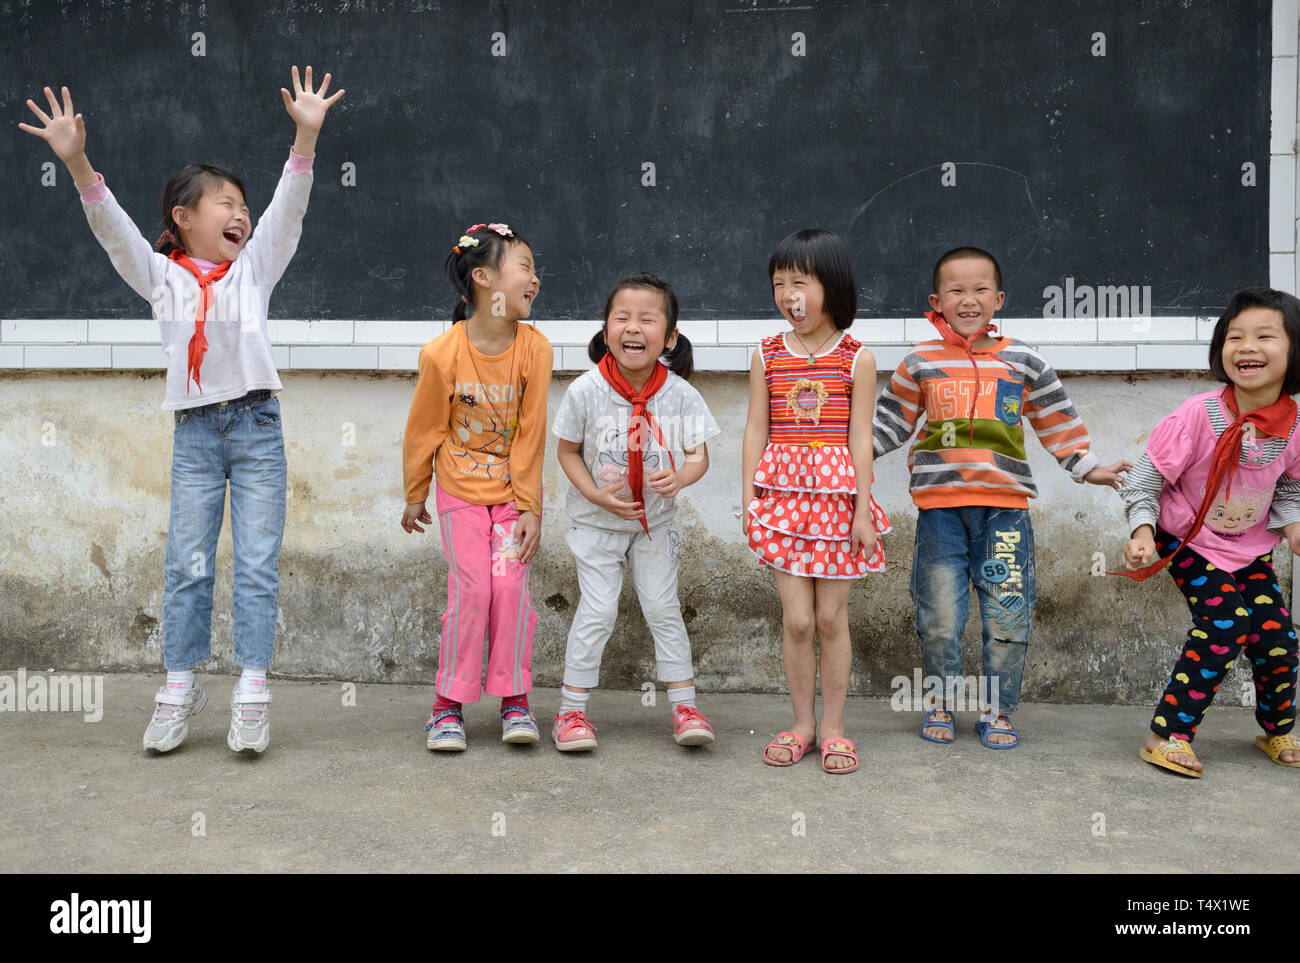 Primäre alter Schule Kinder springen und lachend in der Schule Spielplatz in ländlichen Region Guangxi, Südchina. Stockfoto